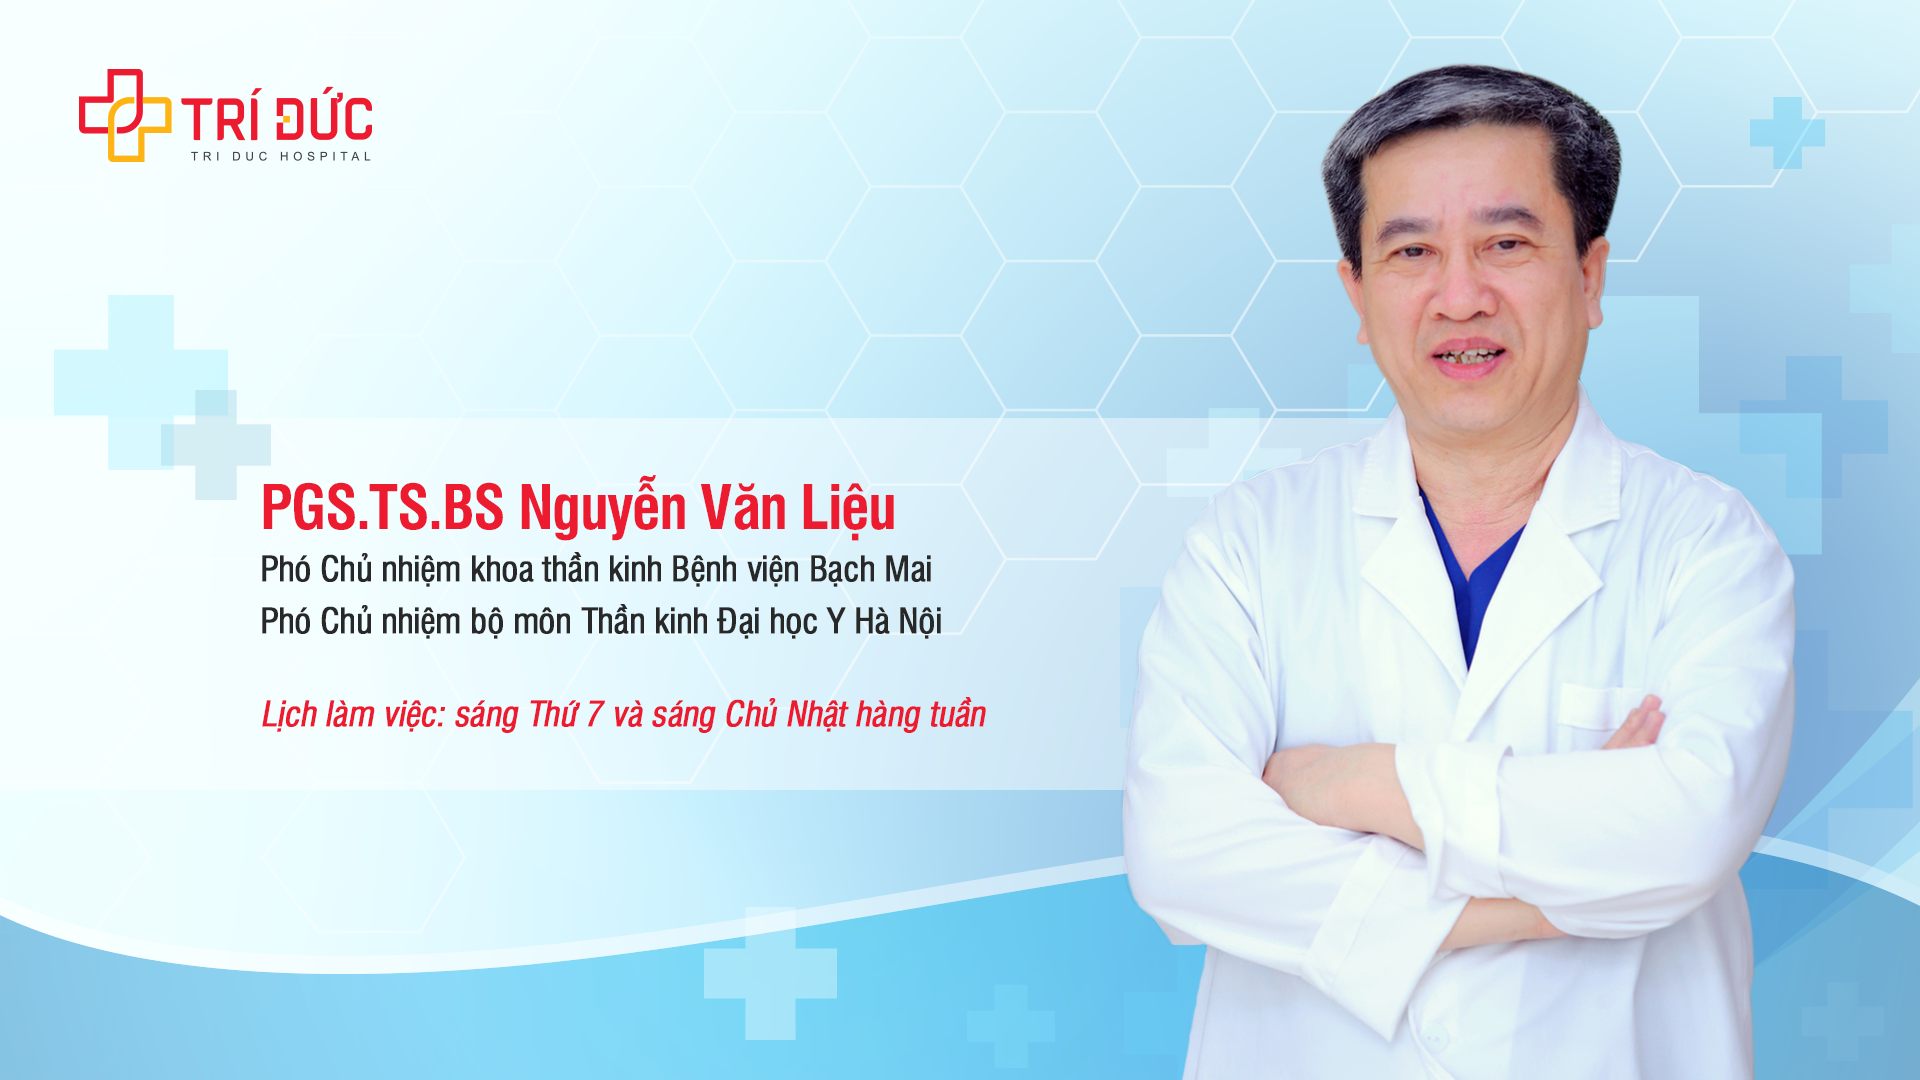 PGS.TS.BS Nguyễn Văn Liệu - Người truyền lửa cho thế hệ thầy thuốc sau này